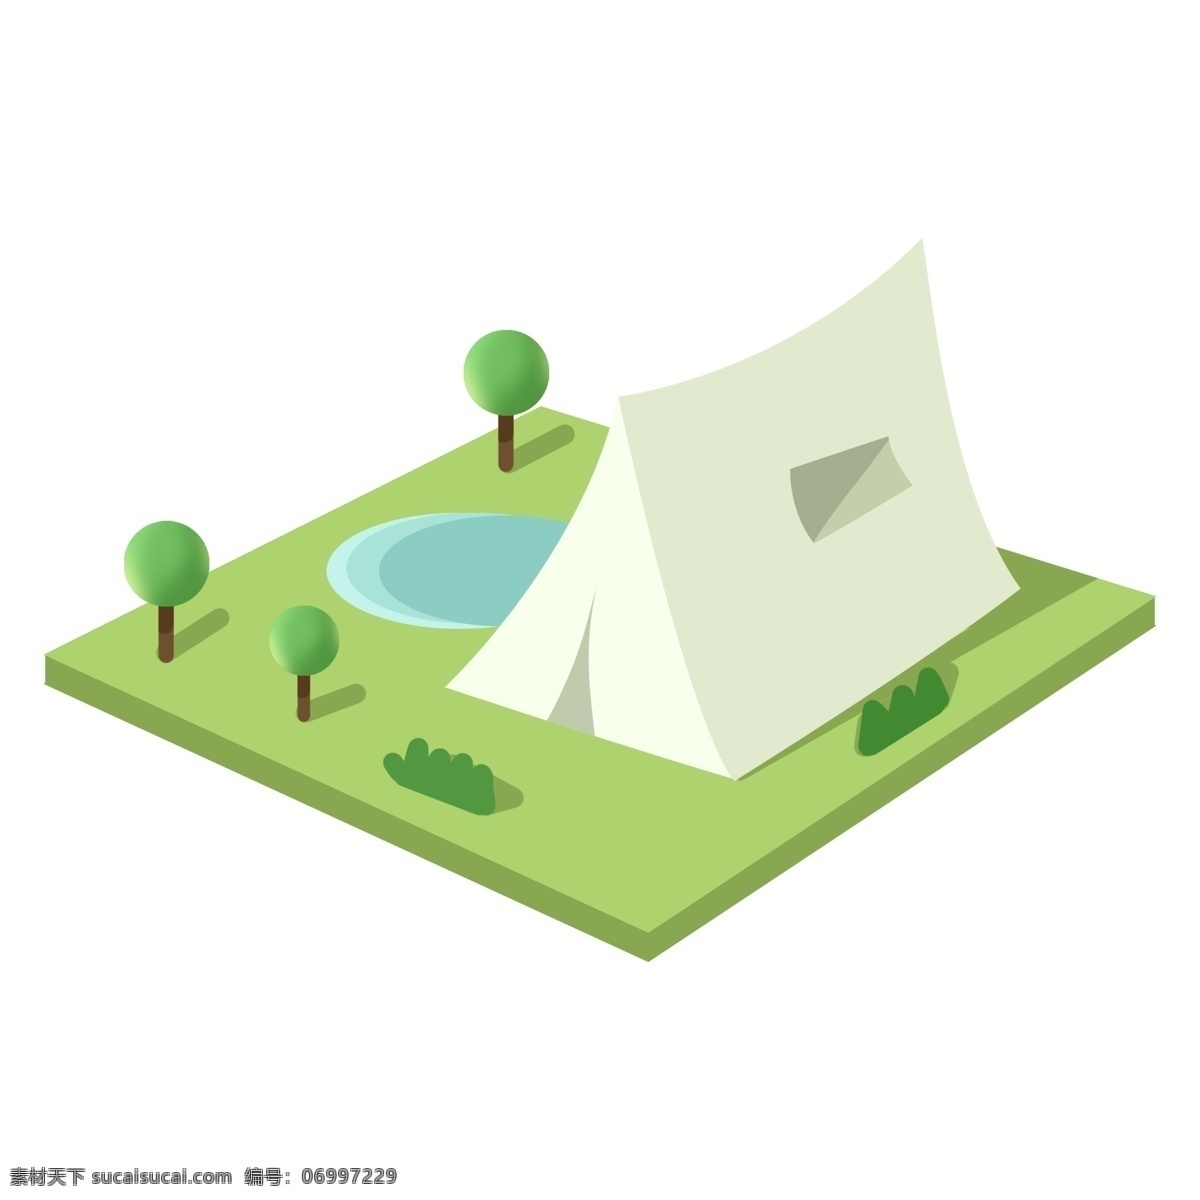 白色 简约 房子 立体 插图 绿色草地 白色房子 简约房子 绿色植物 蓝色水池 简易房 户外的房子 房子插图